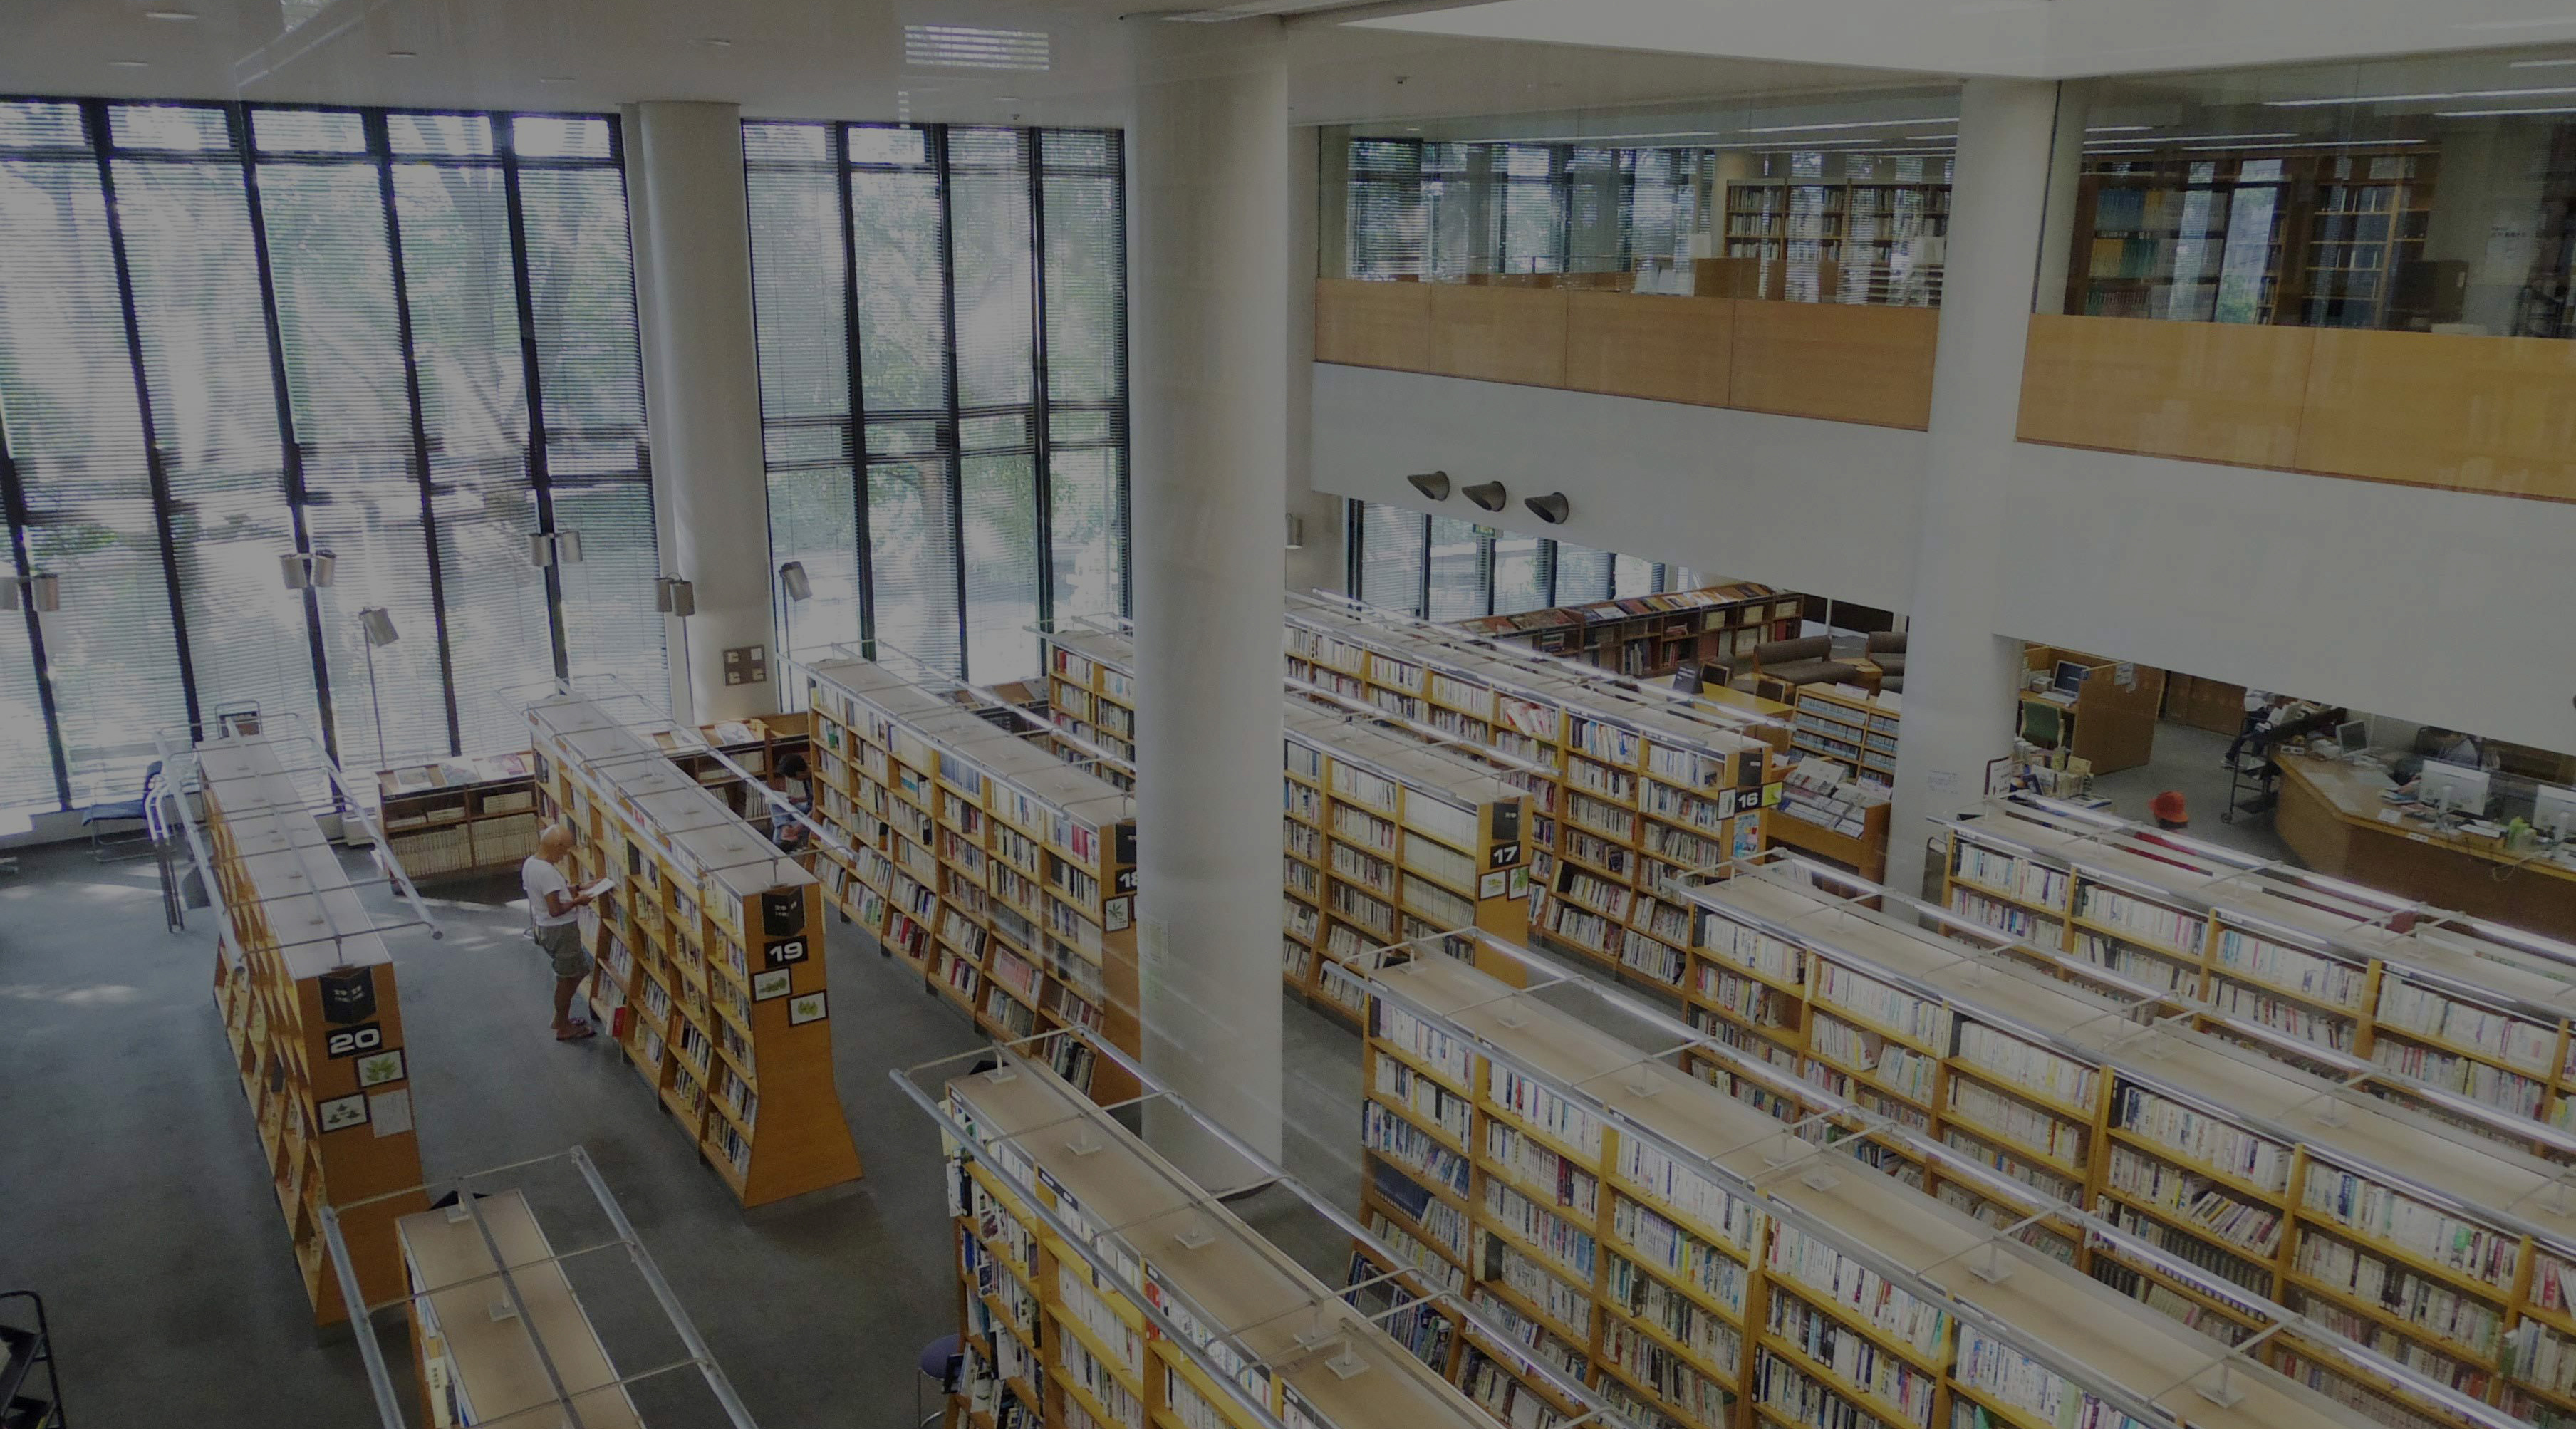 和歌山市民図書館 “カウンター越しのご縁”をつないで市民参加型図書館へ